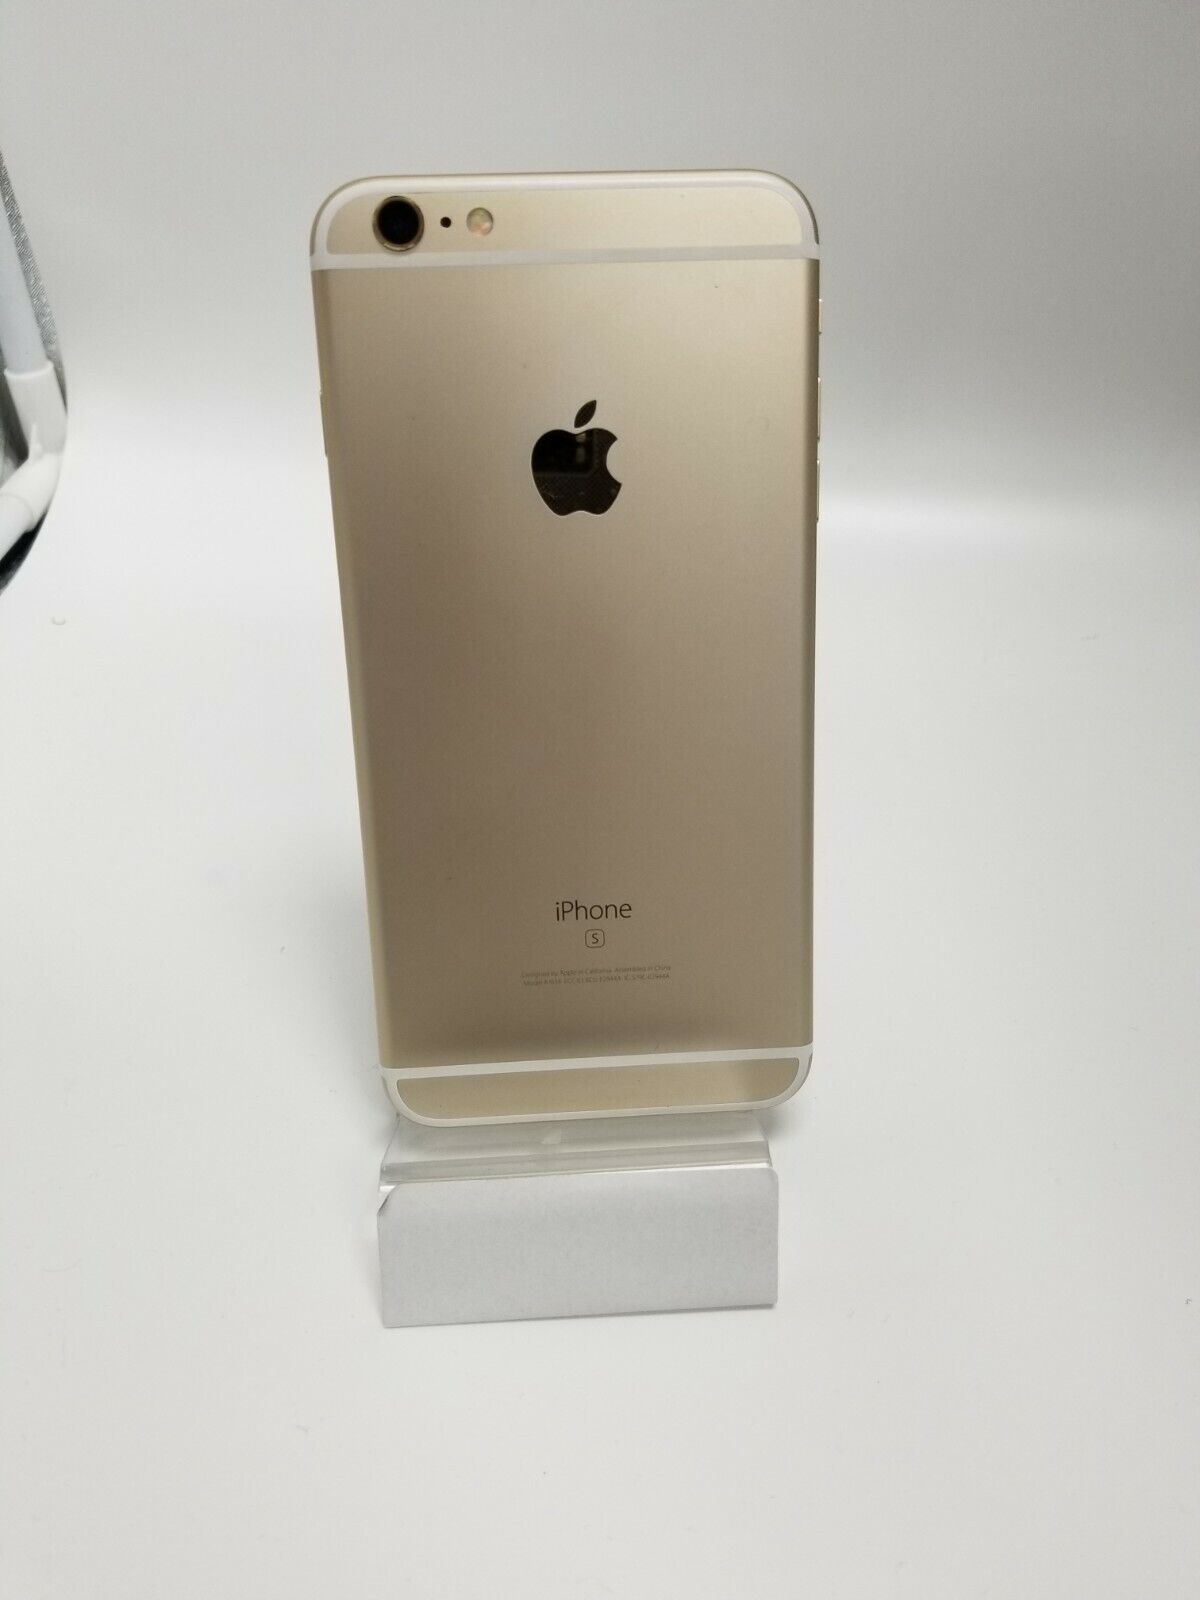 6SP_03 APPLE iPhone 6s Plus Gold 64GB - Great Condition - Not activating Zaskakująca wyjątkowa wartość, cena zysku